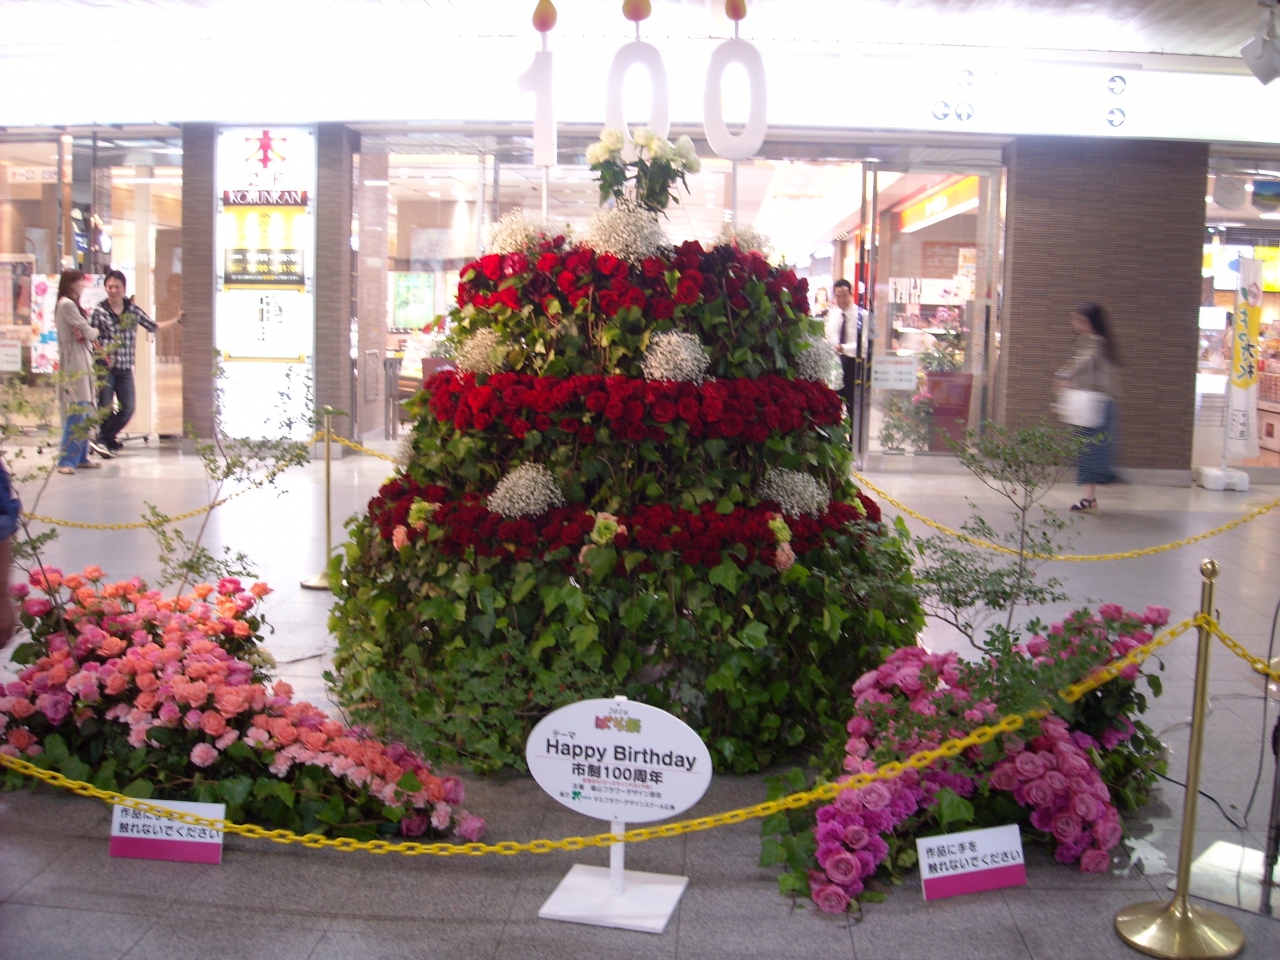 福山ばら祭り 福山 広島県 の旅行記 ブログ By Suzuka さん フォートラベル